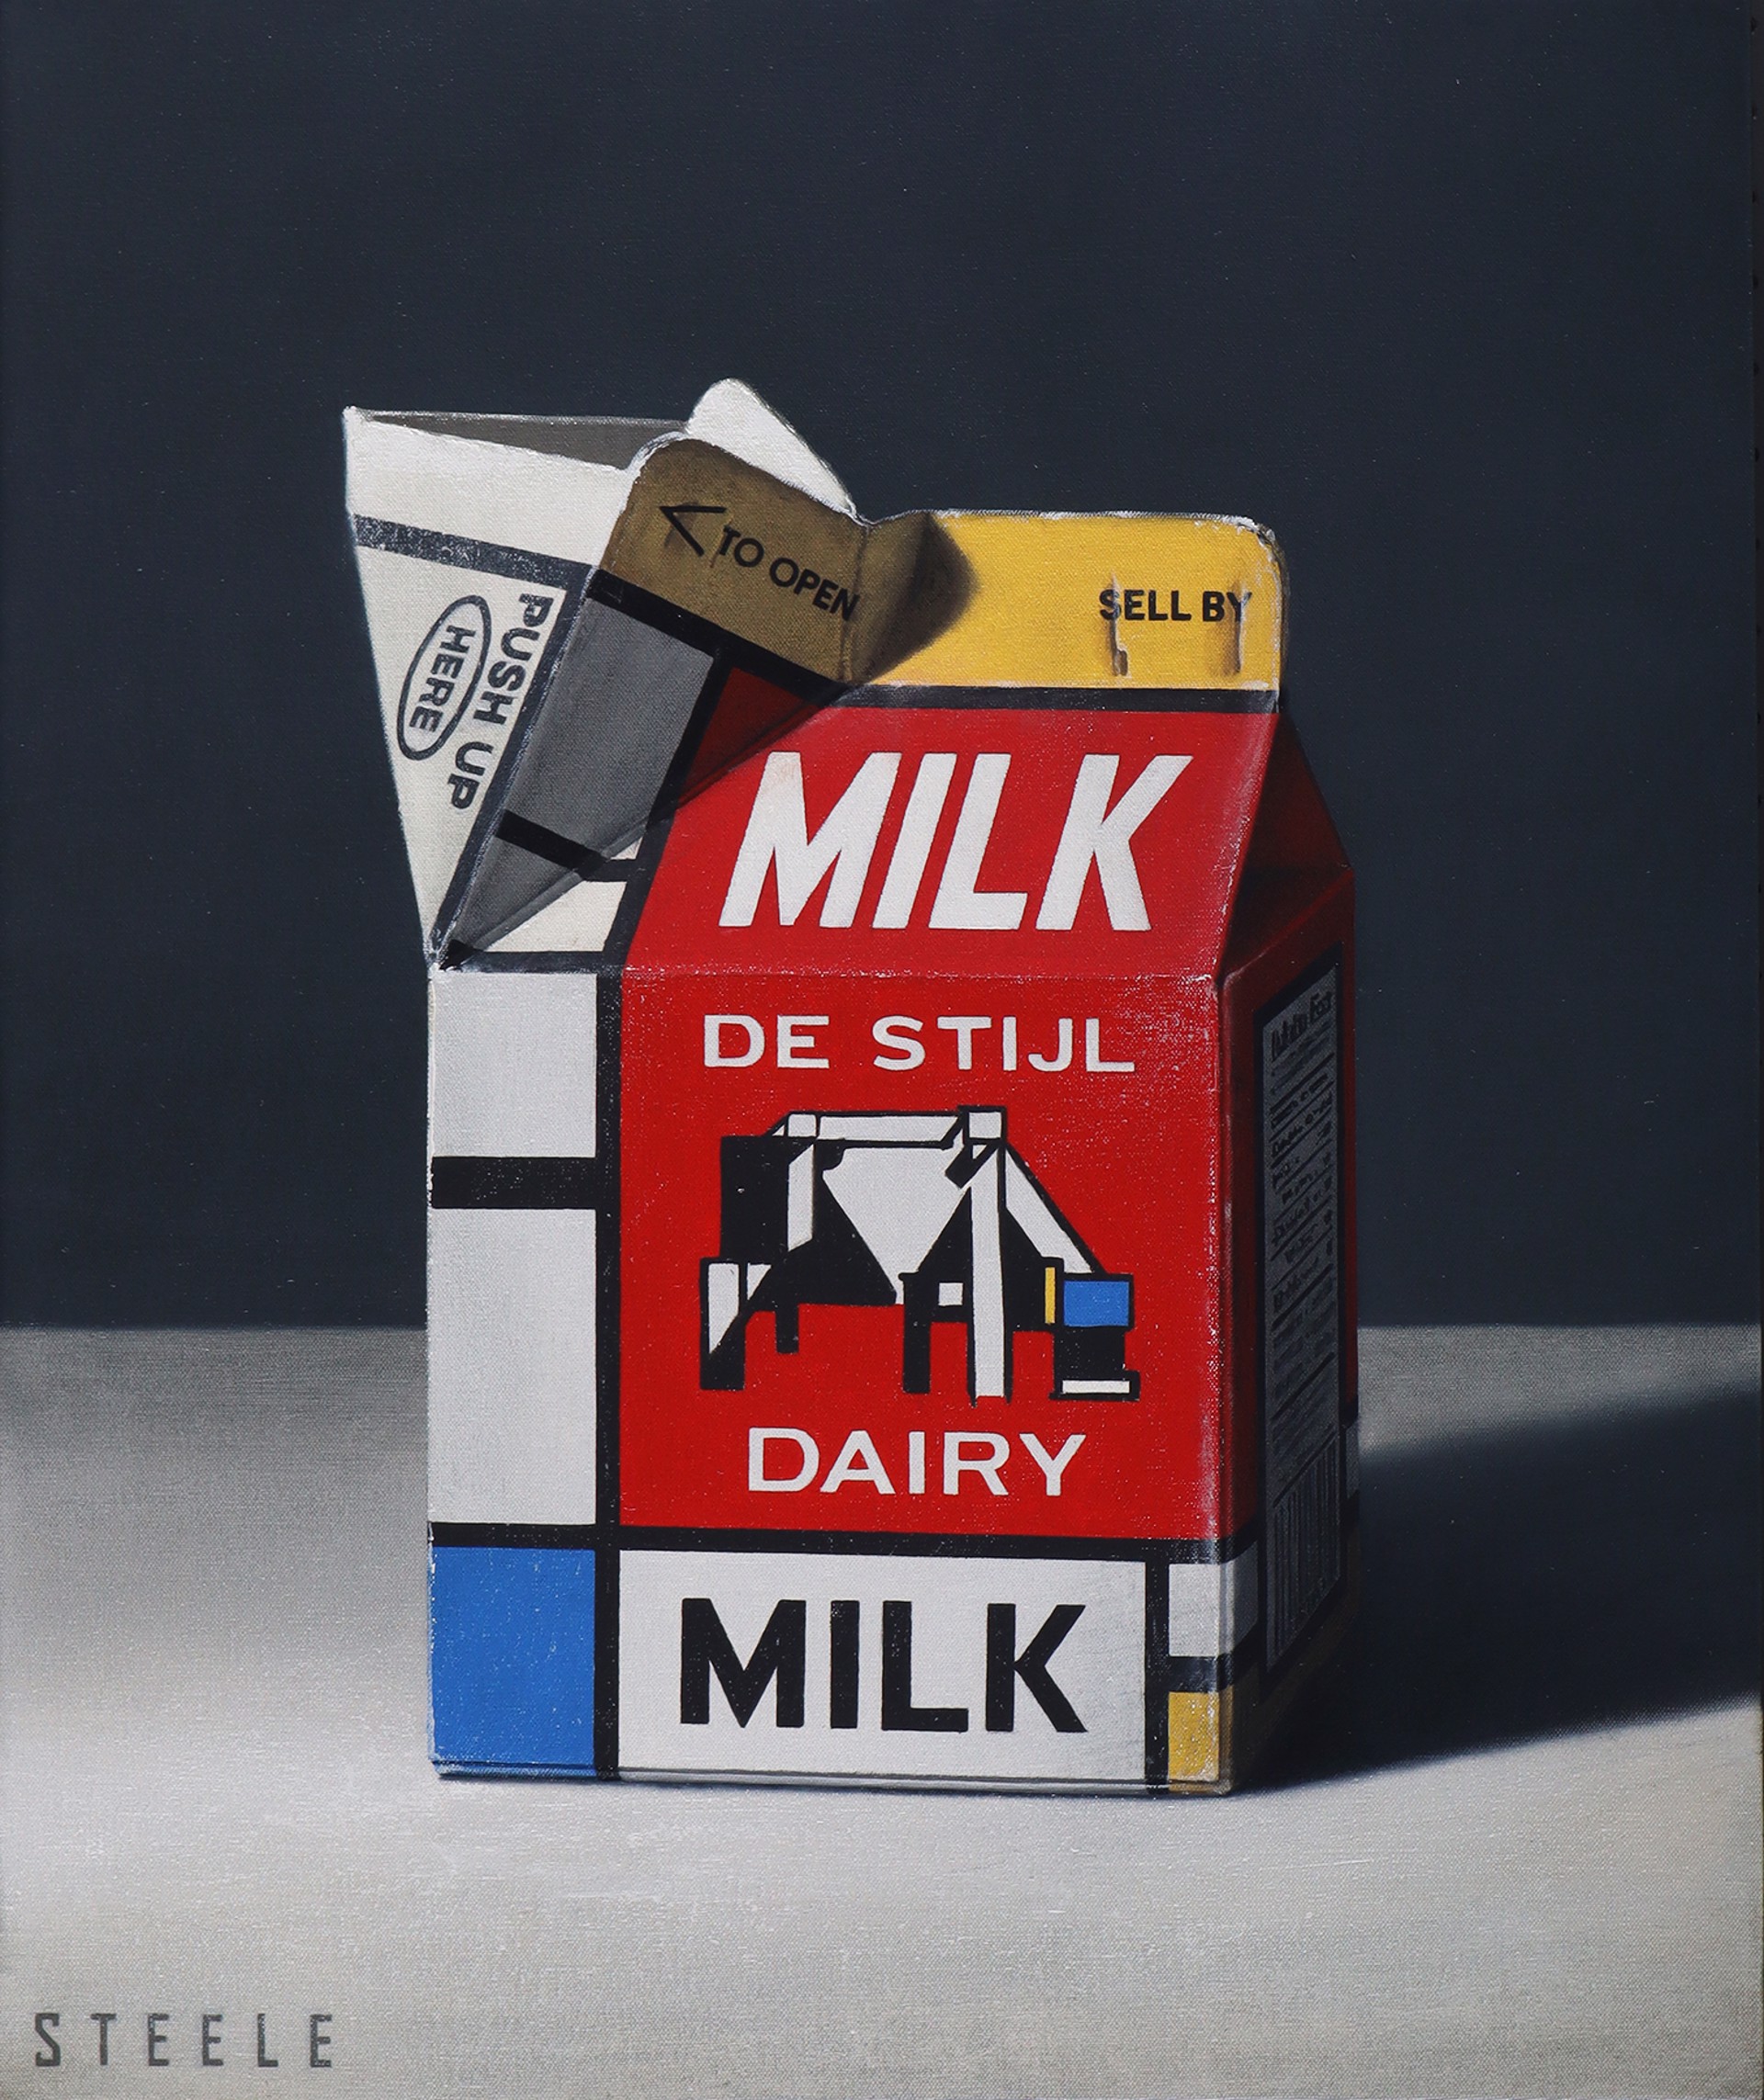 De Stijl Dairy Milk by Ben Steele